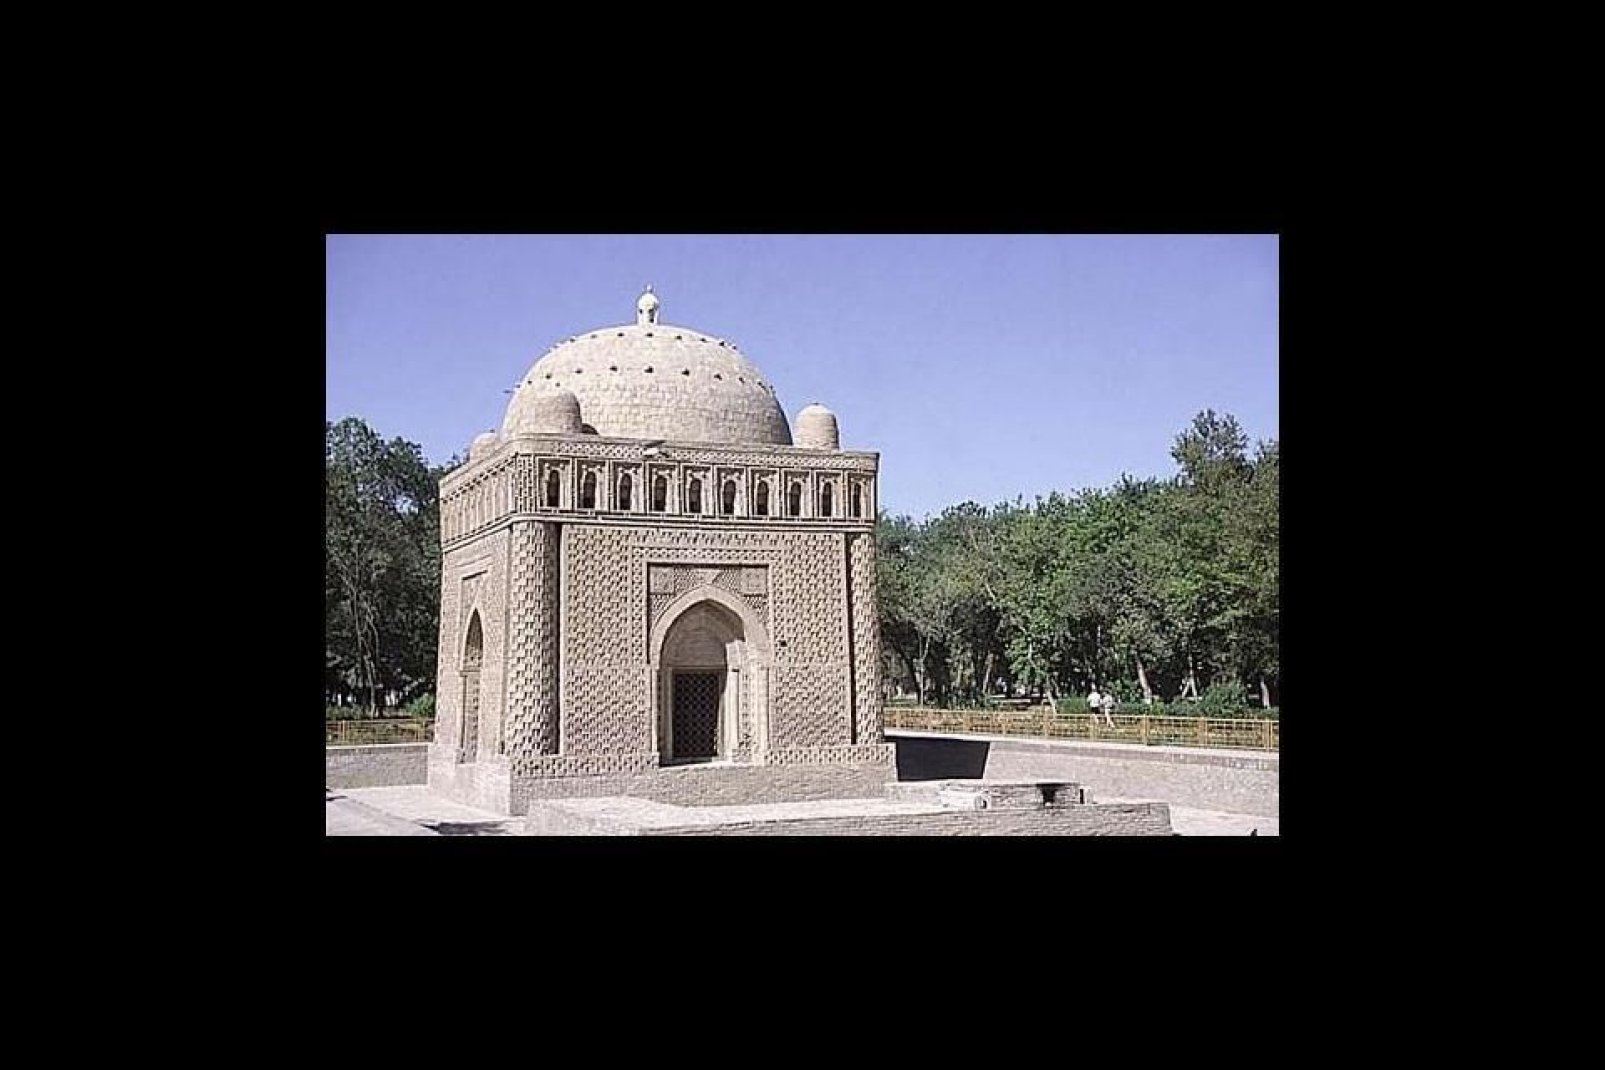 El mausoleo de Ismaël Samani es probablemente uno de los mausoleos musulmanes más antiguos del mundo. ¡Su construcción se remonta al siglo X!